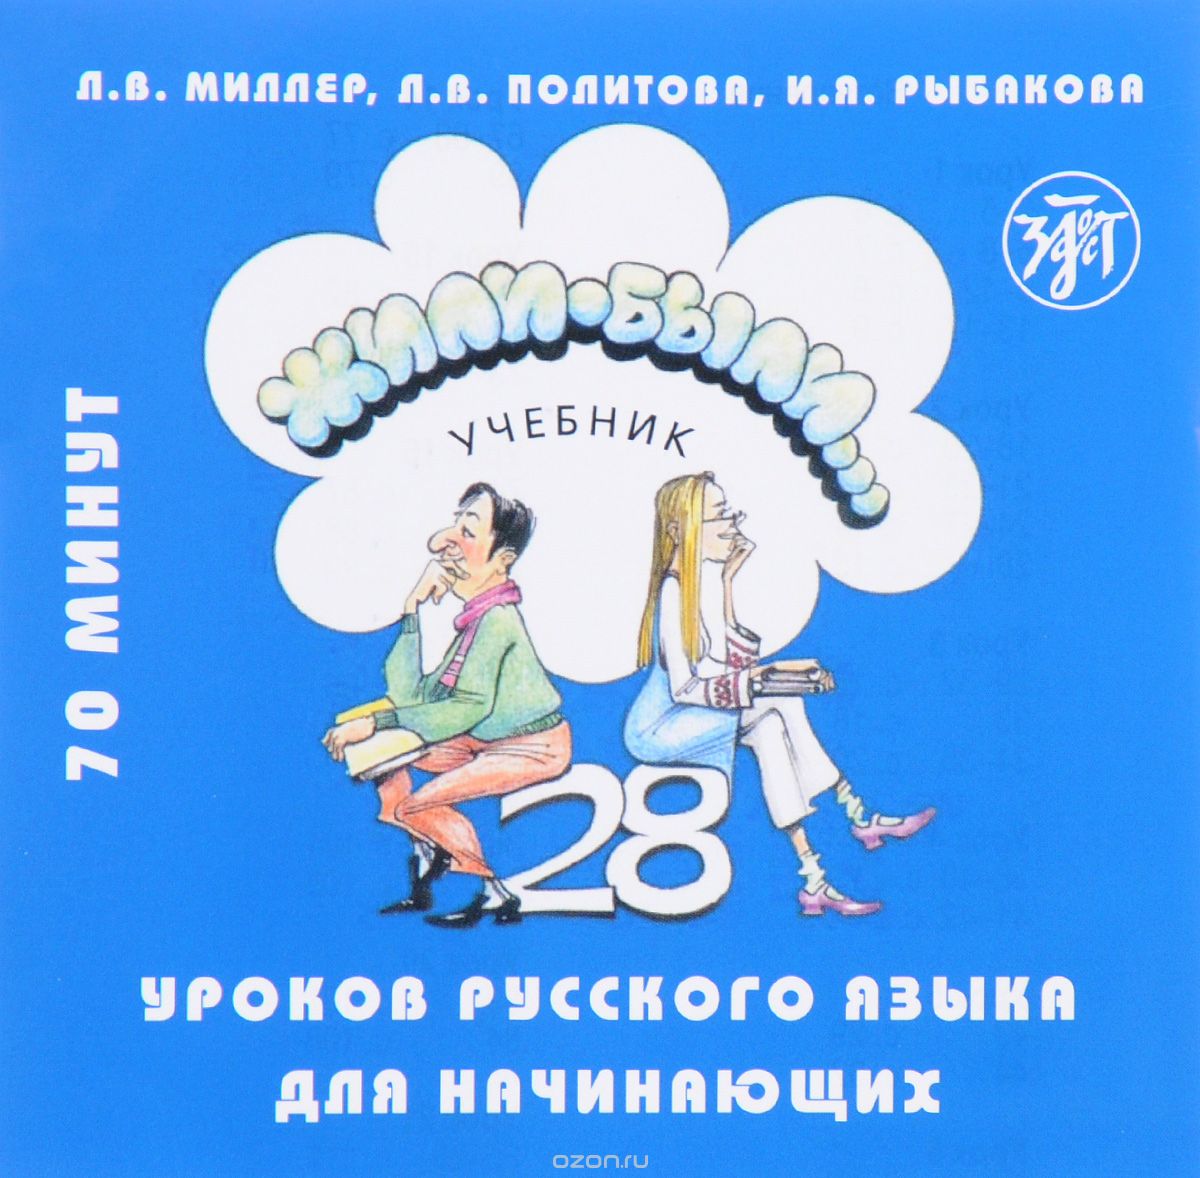 Жили-были... 28 уроков русского языка для начинающих. Учебник (аудиокурс на CD)